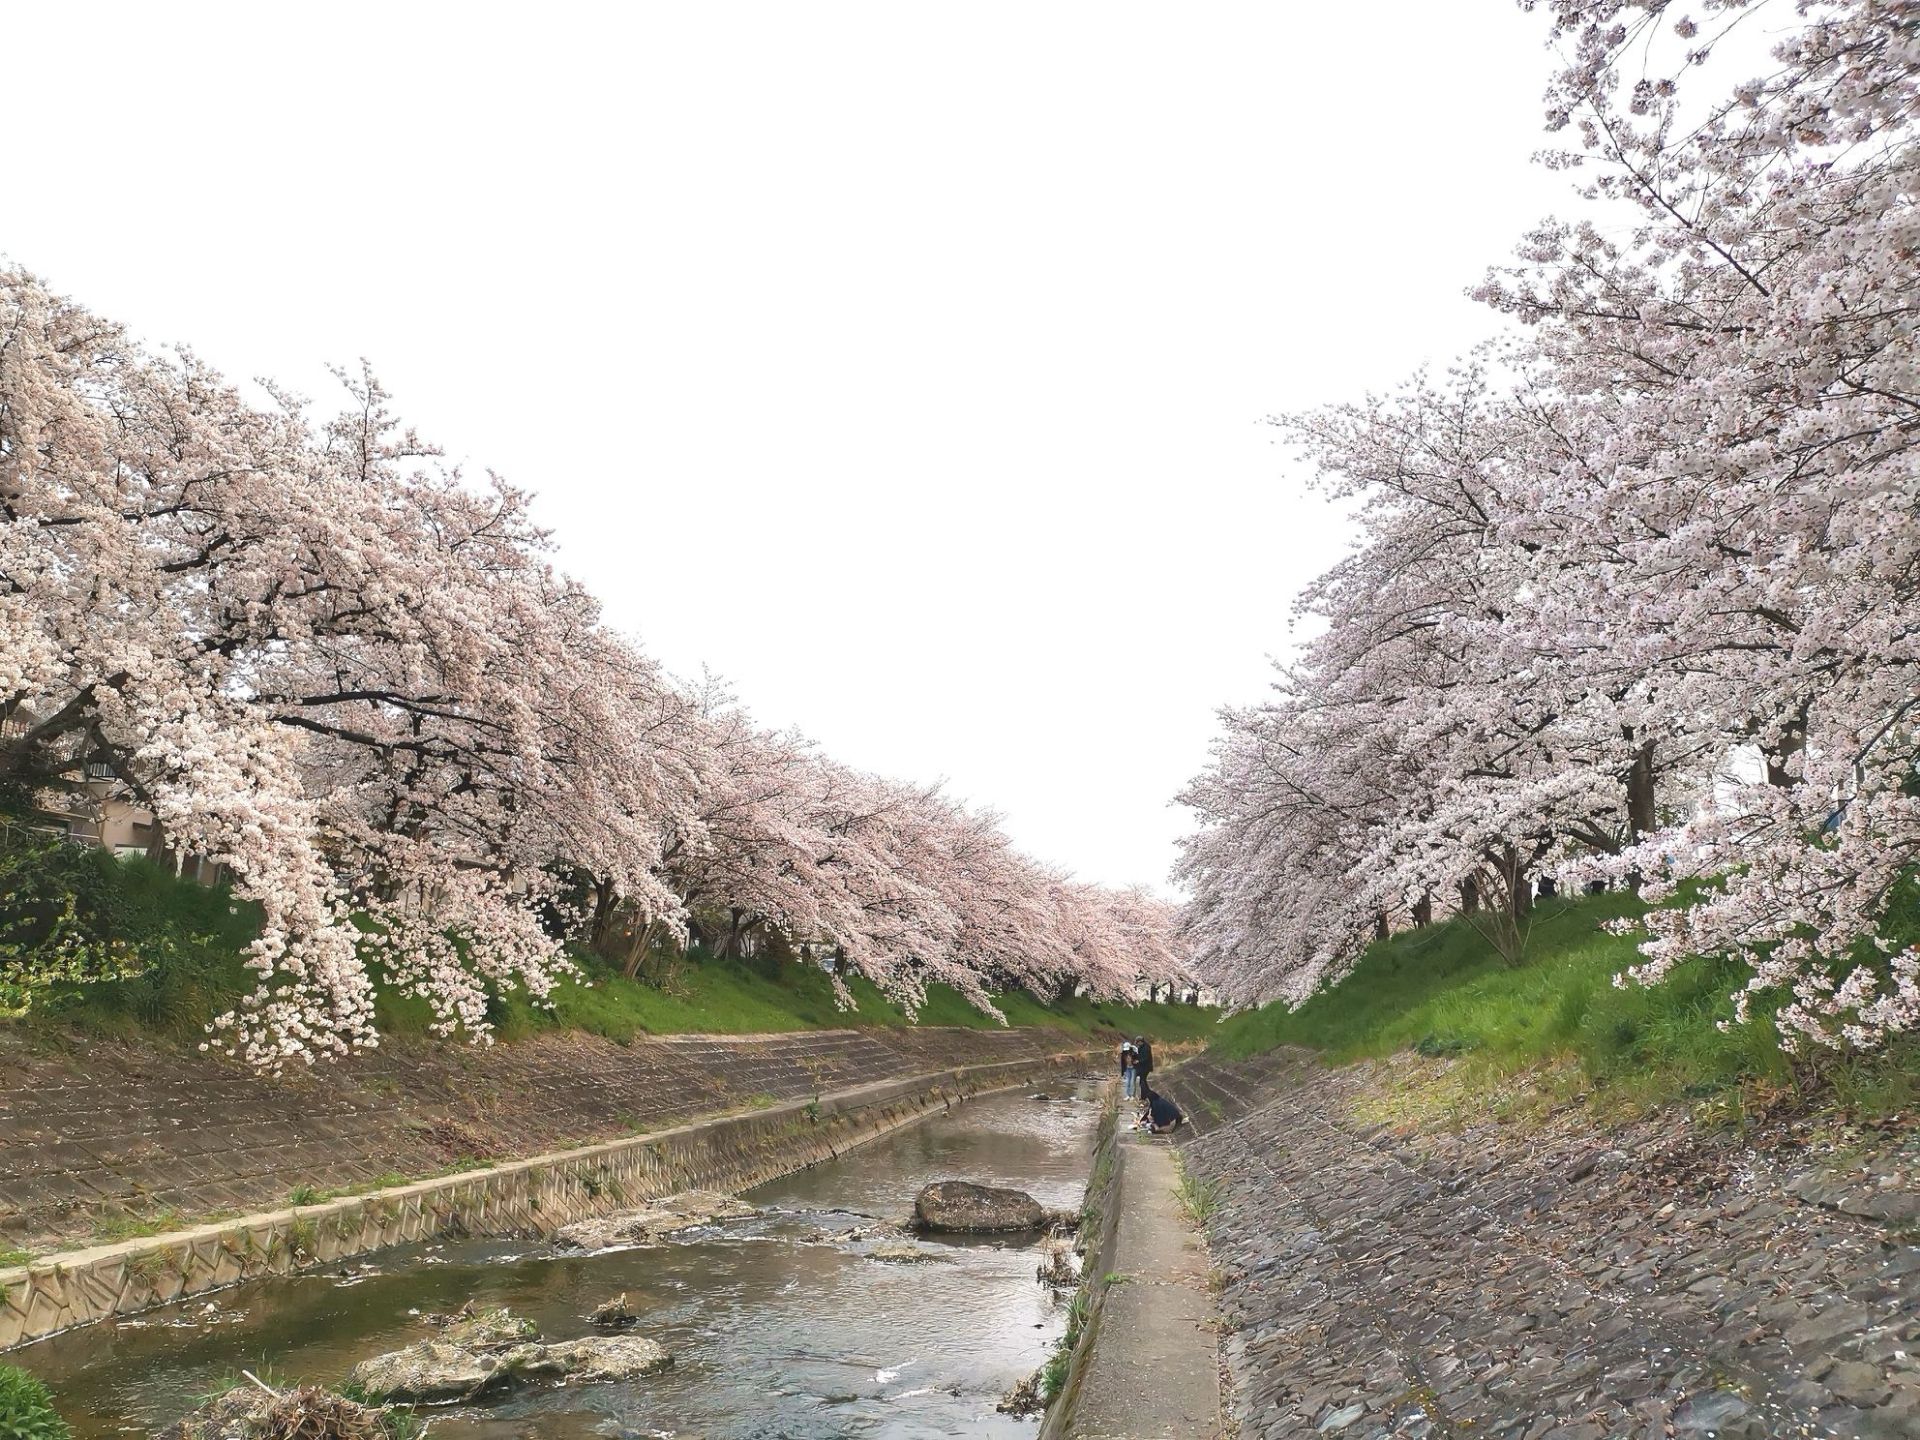 一到奈良，直奔佐保川！两岸的樱花已经盛开，一望无际，潺潺的溪流，飘落的樱花瓣顺势而下，美极了！